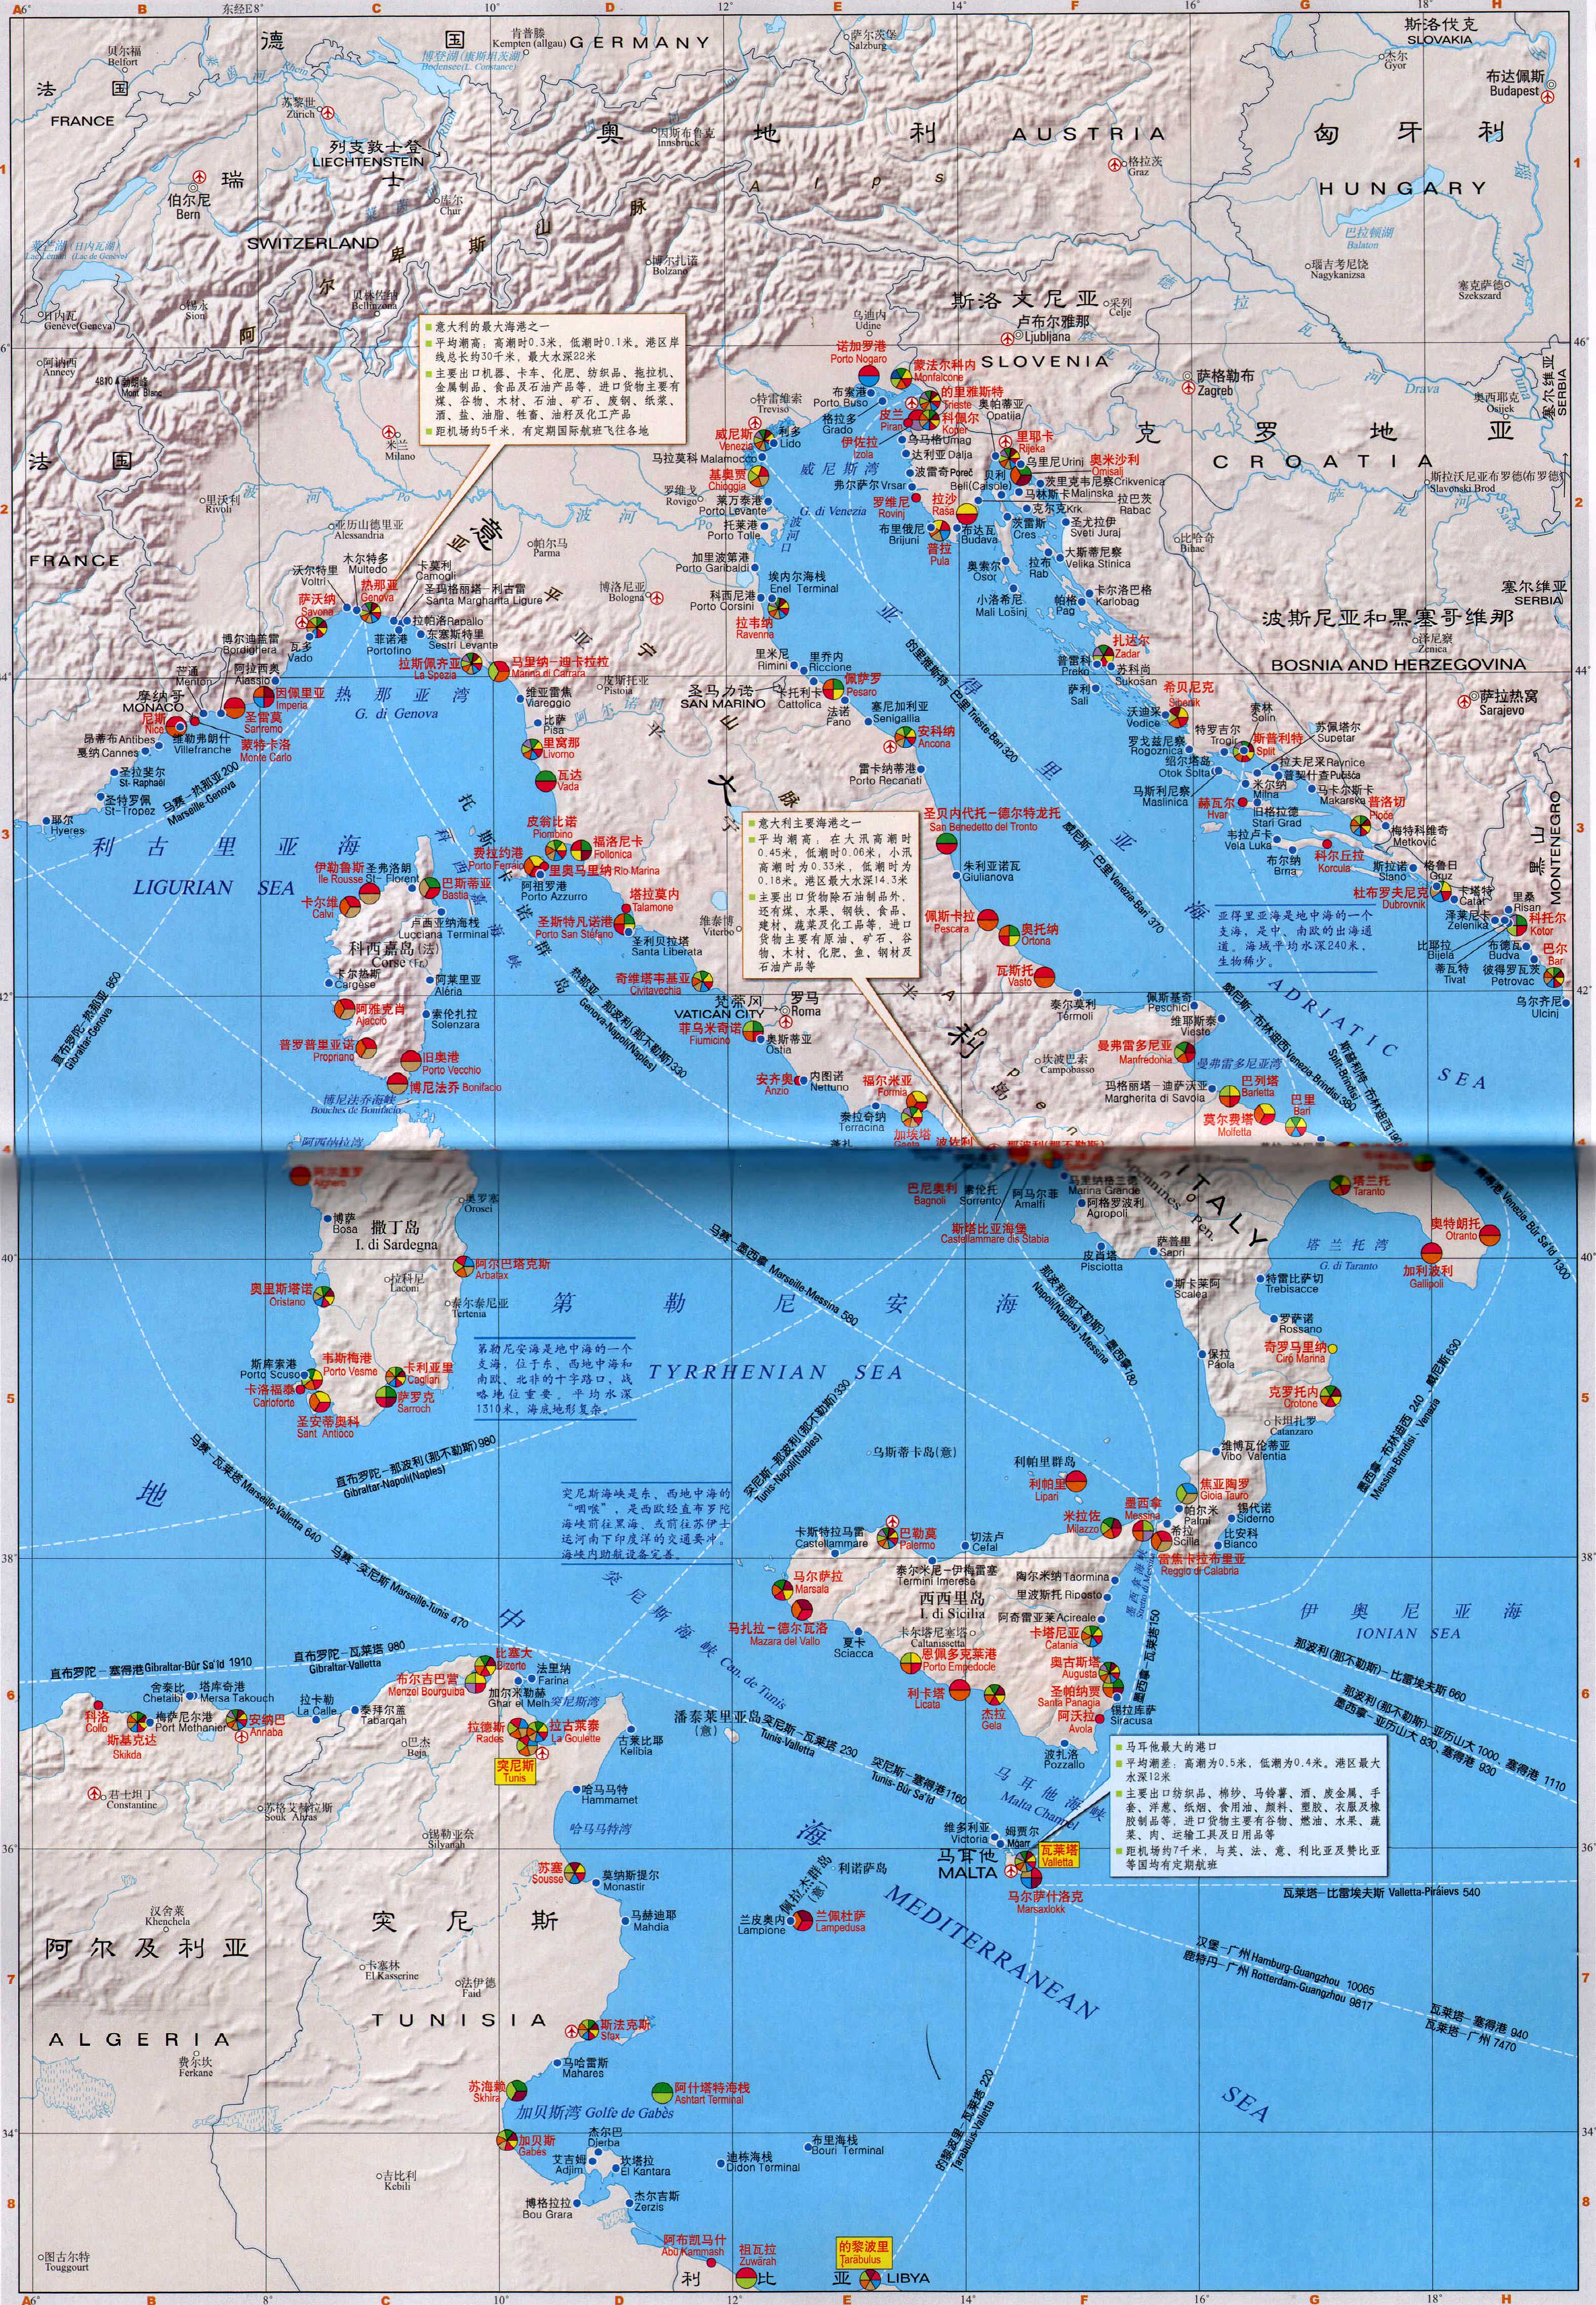 希腊,阿尔巴尼亚港口分布图  | 港口分布图 |  下一张地图: 英国图片